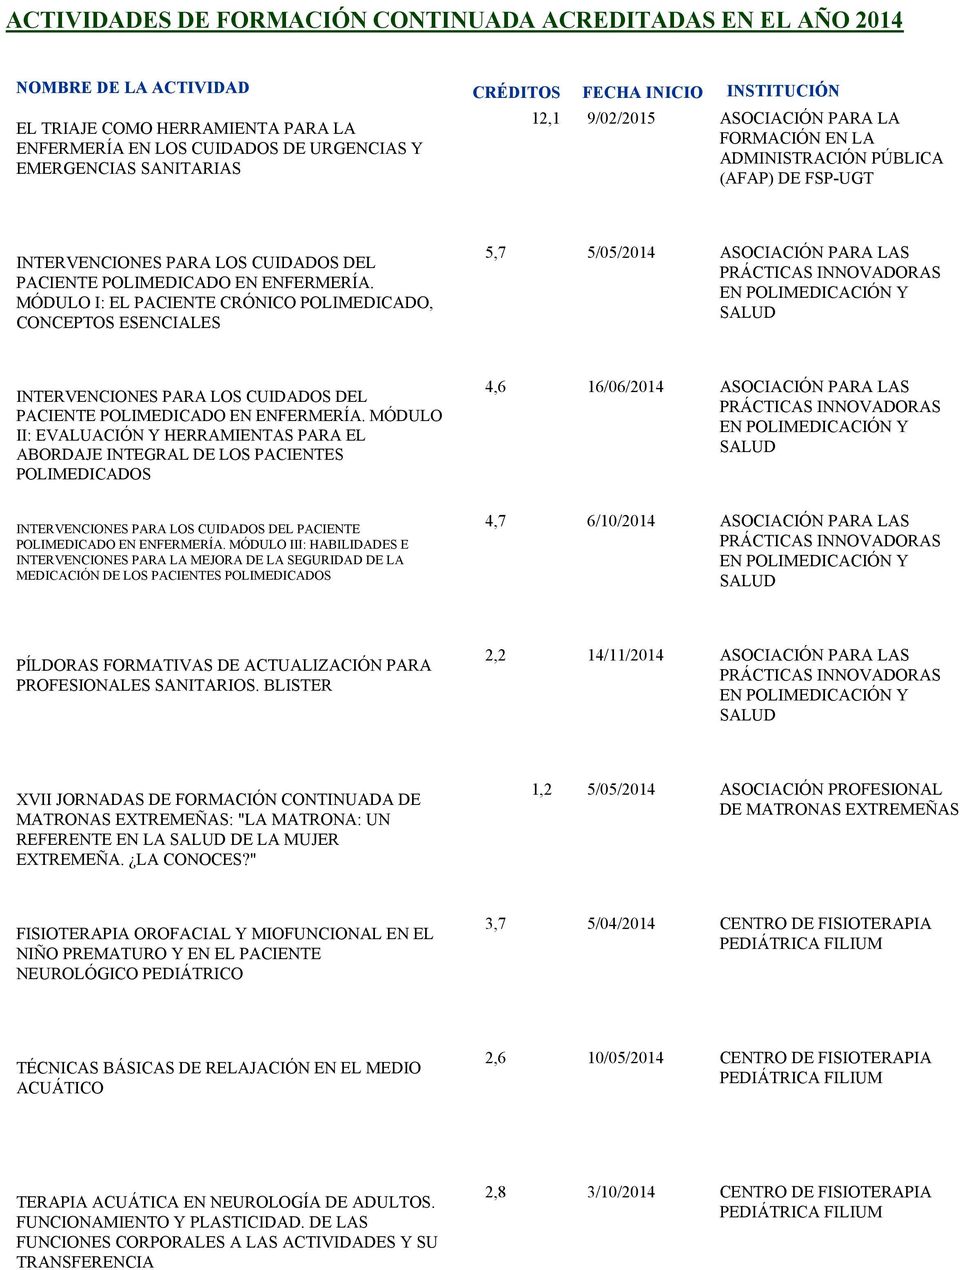 MÓDULO I: EL PACIENTE CRÓNICO POLIMEDICADO, CONCEPTOS ESENCIALES 5,7 5/05/2014 ASOCIACIÓN PARA LAS PRÁCTICAS INNOVADORAS EN POLIMEDICACIÓN Y SALUD  MÓDULO II: EVALUACIÓN Y HERRAMIENTAS PARA EL